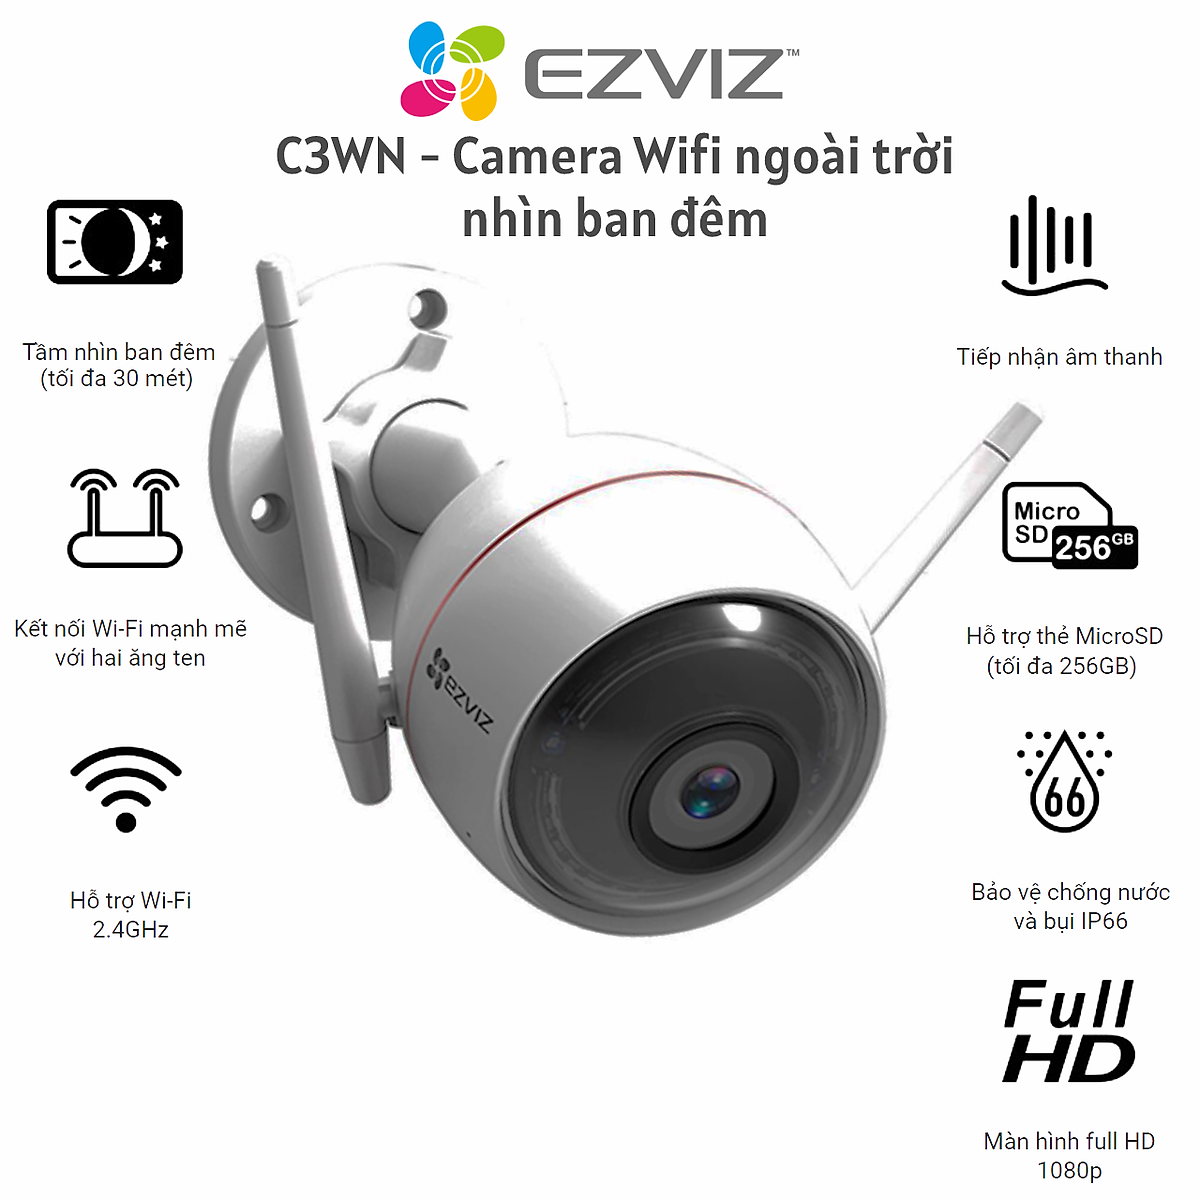 Camera IP Ngoài Trời Chống Nước Ezviz C3WN 2Mp Full HD1080P - Hàng Chính Hãng